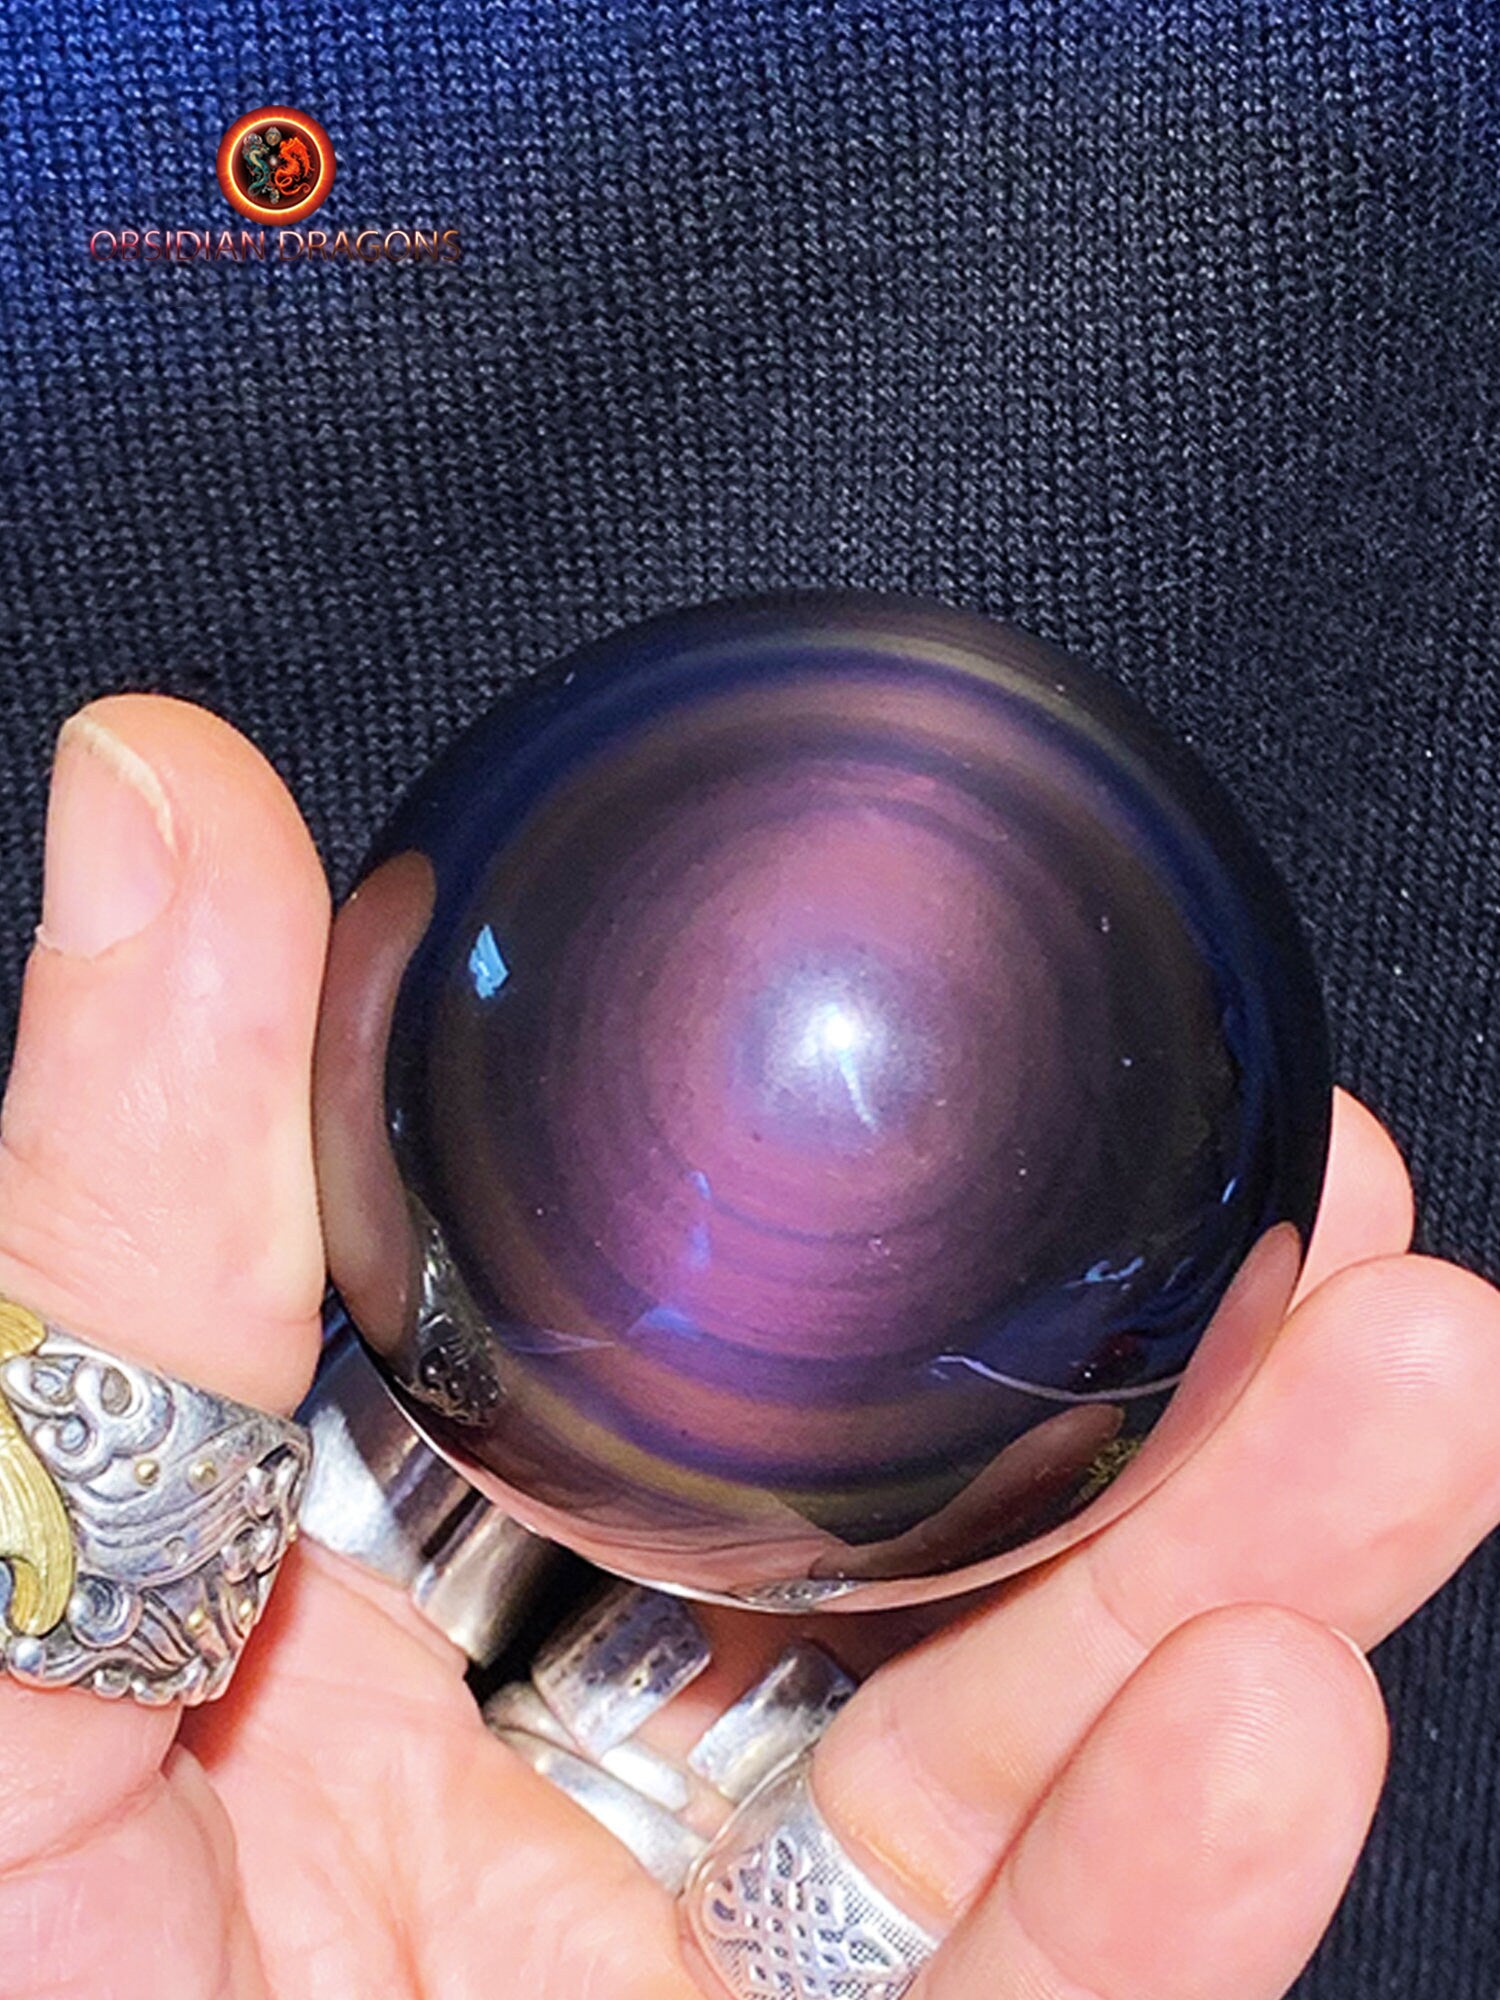 Sphère Obsidienne Oeil Céleste - Entre 50 et 55mm - France Minéraux